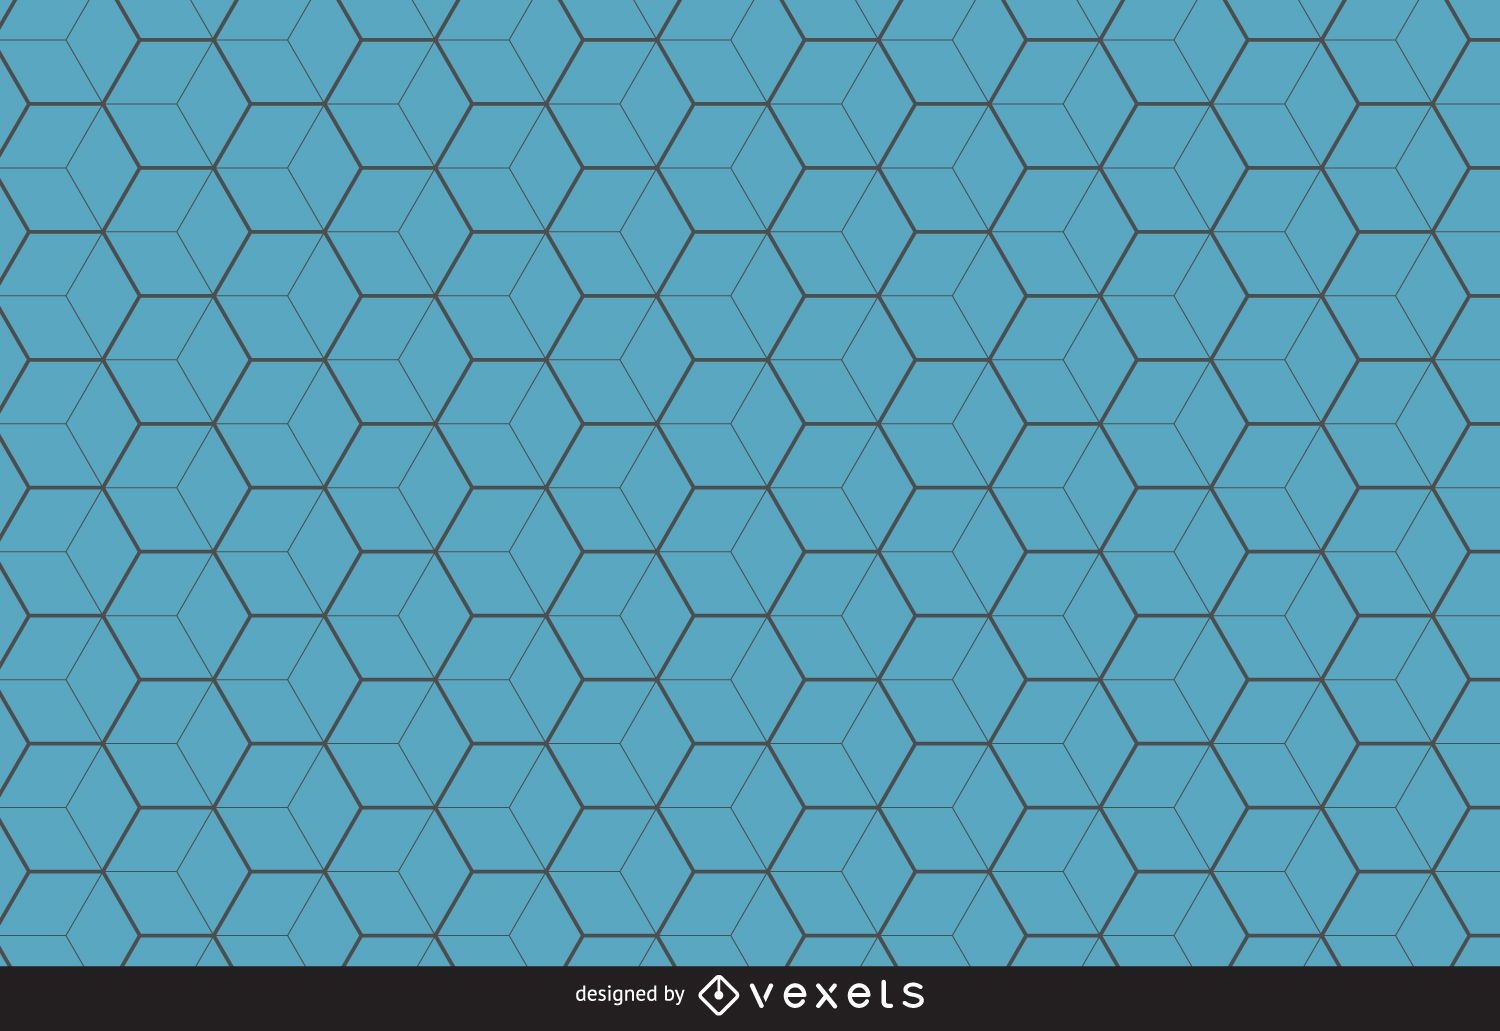 Blue hexagon pattern background